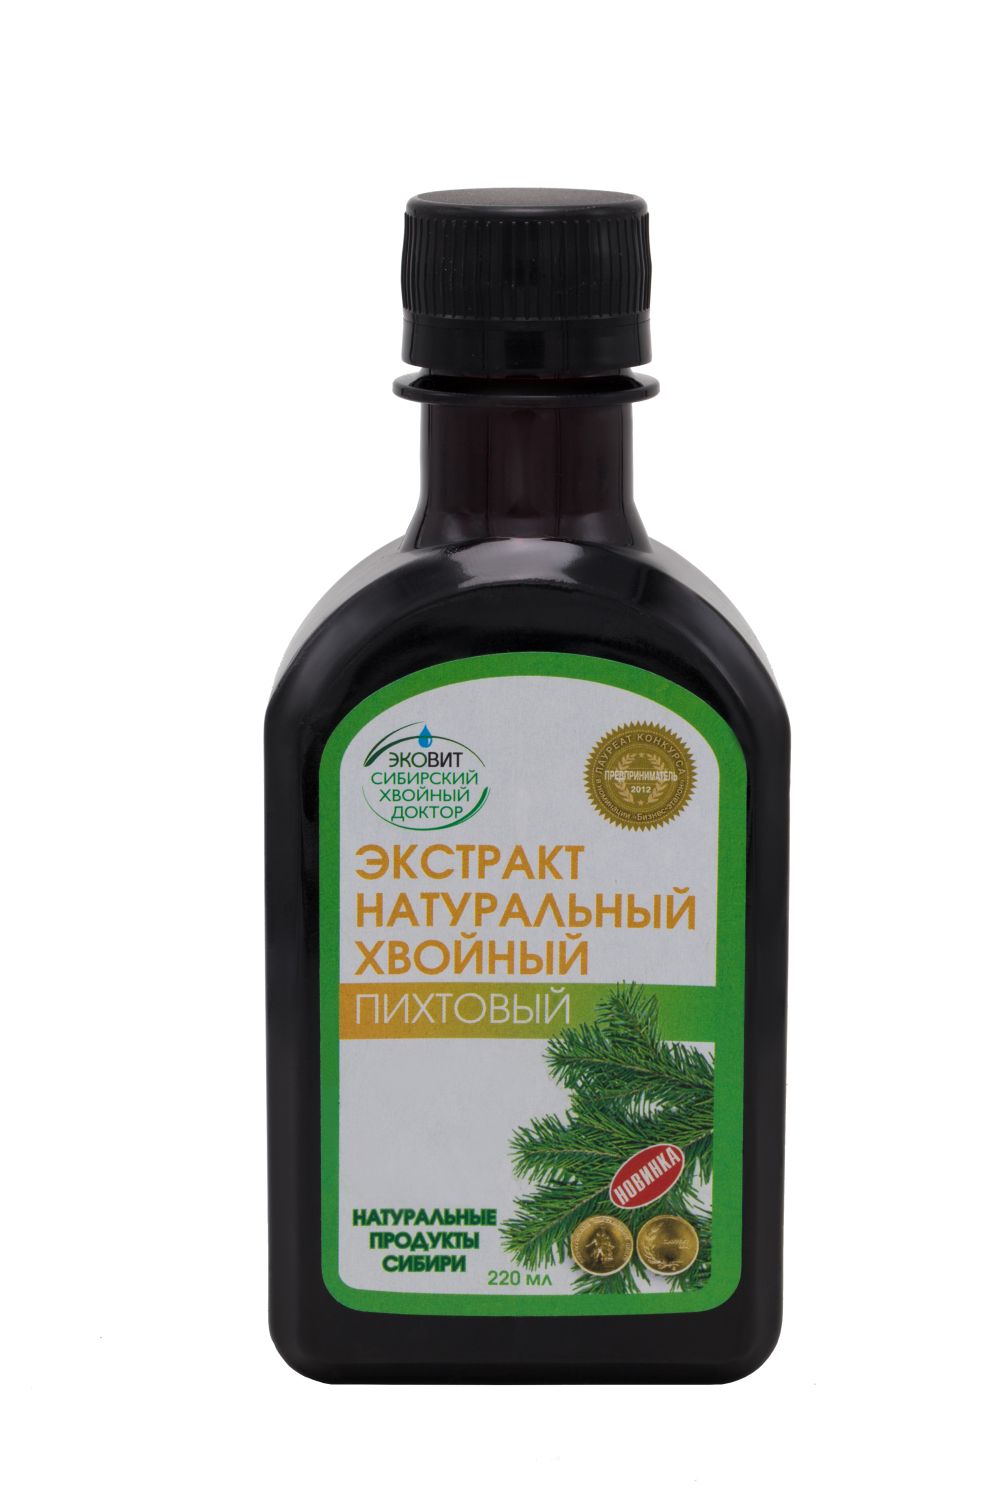 俄罗斯进口绿色食品 天然冷杉针叶萃取液 保健 一级 健康食品进口折扣优惠信息